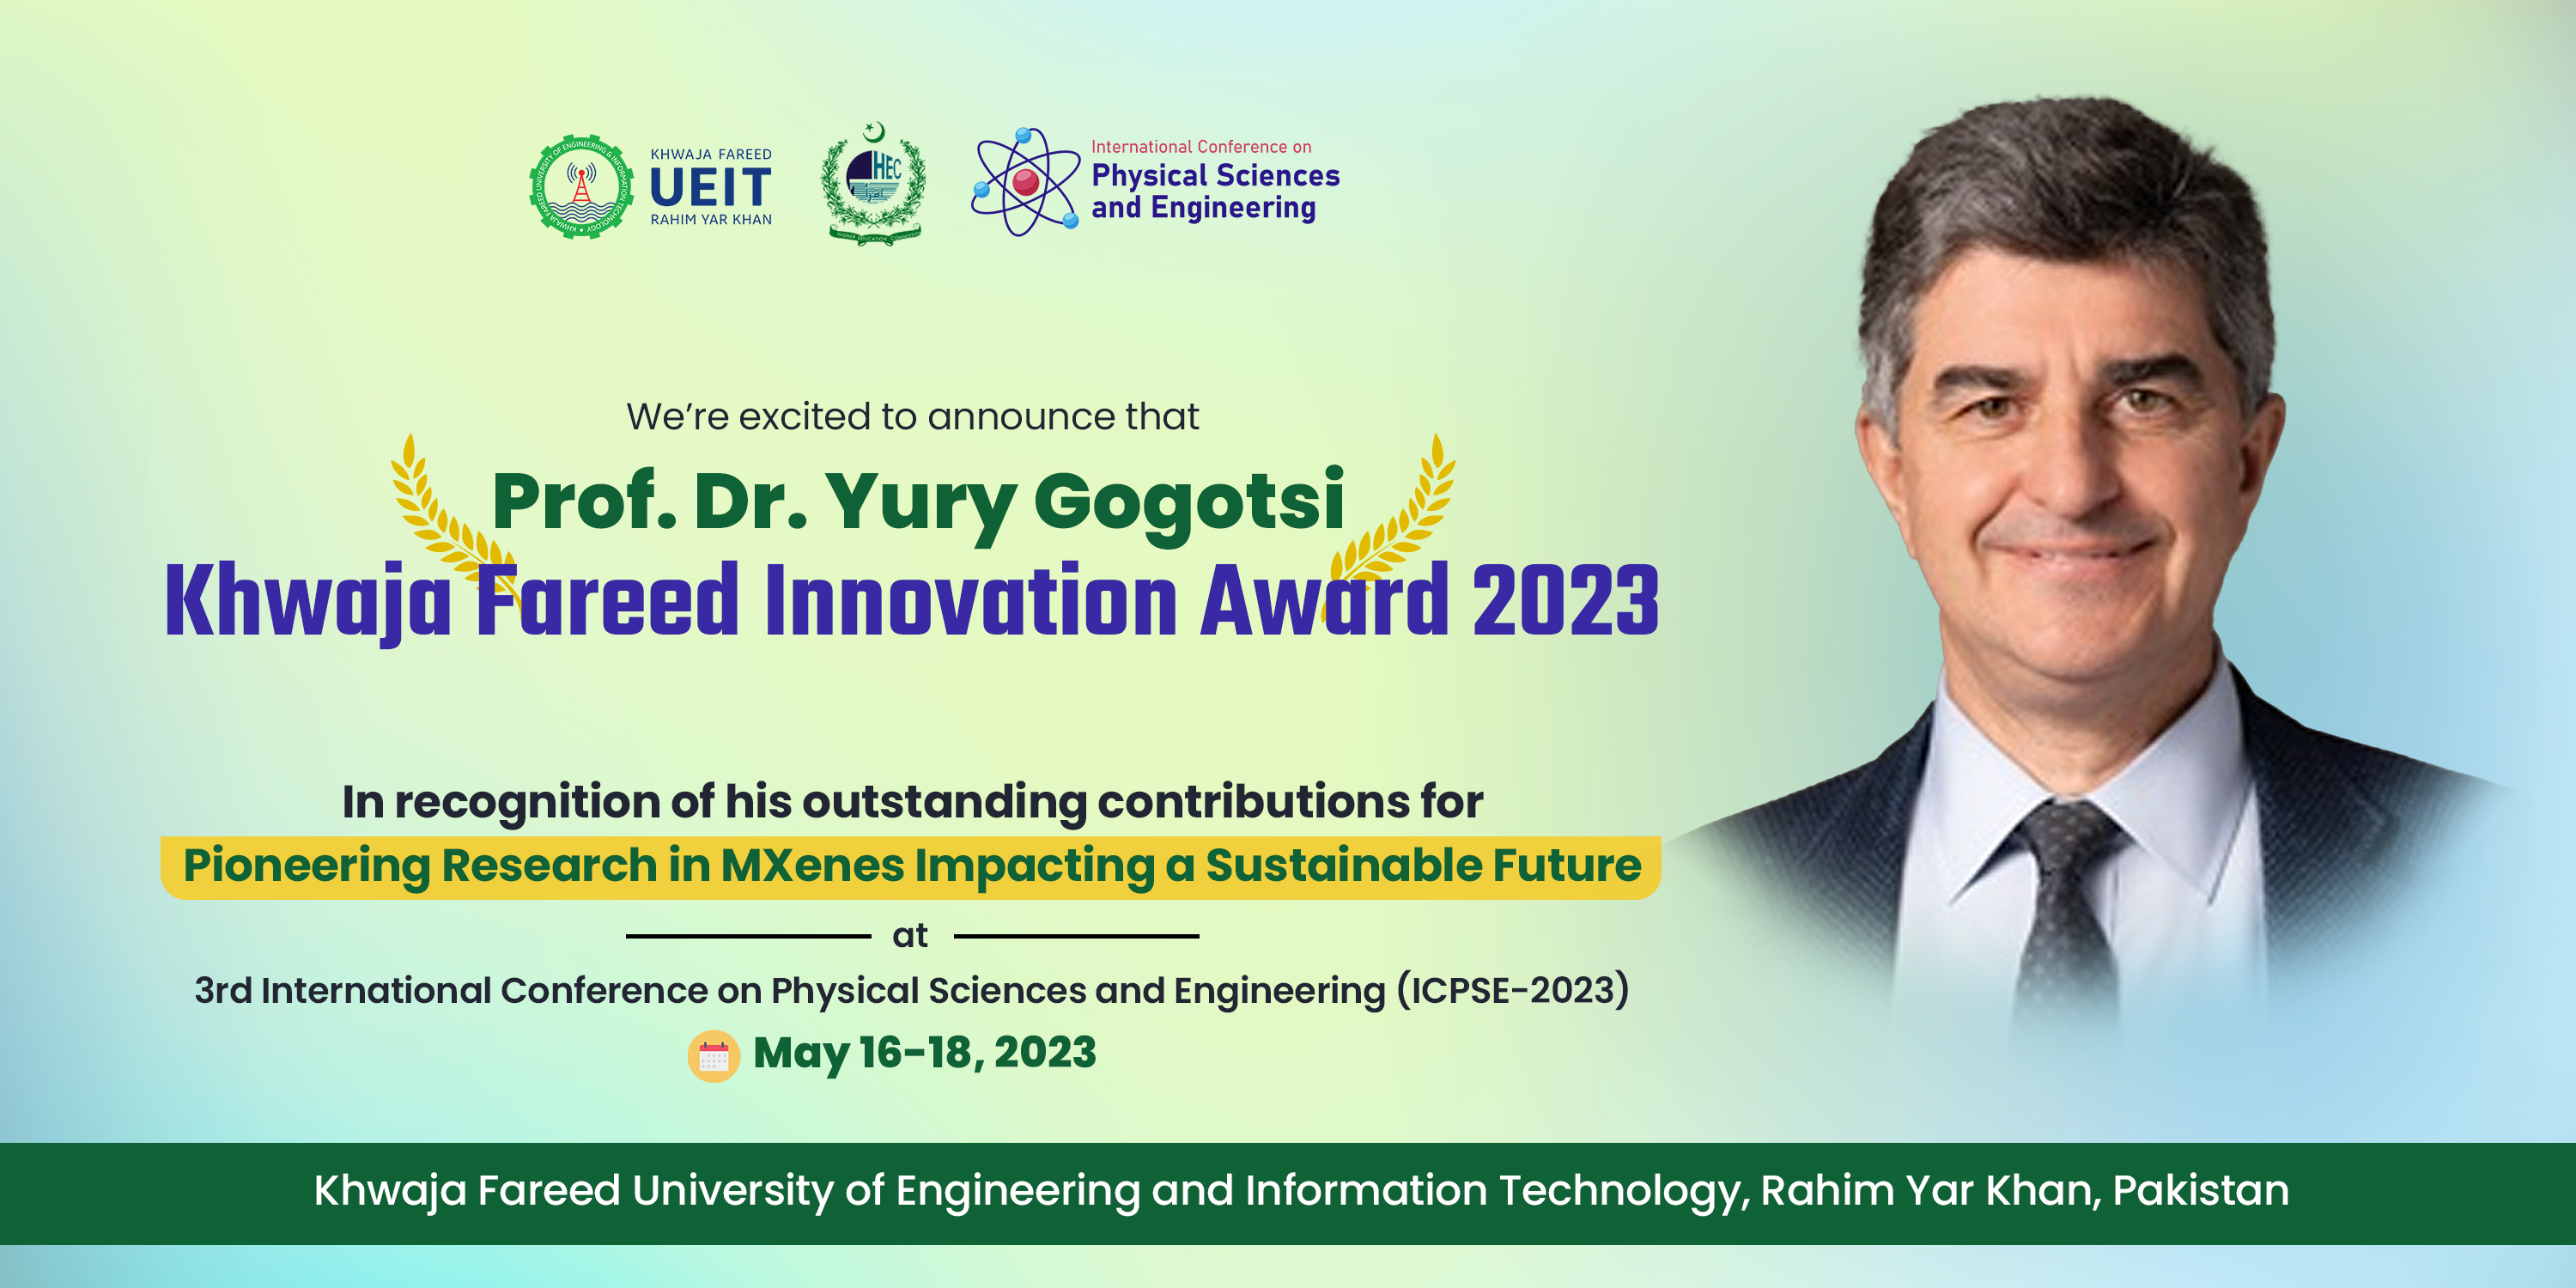 Prof. Dr. Yury Gogotsi